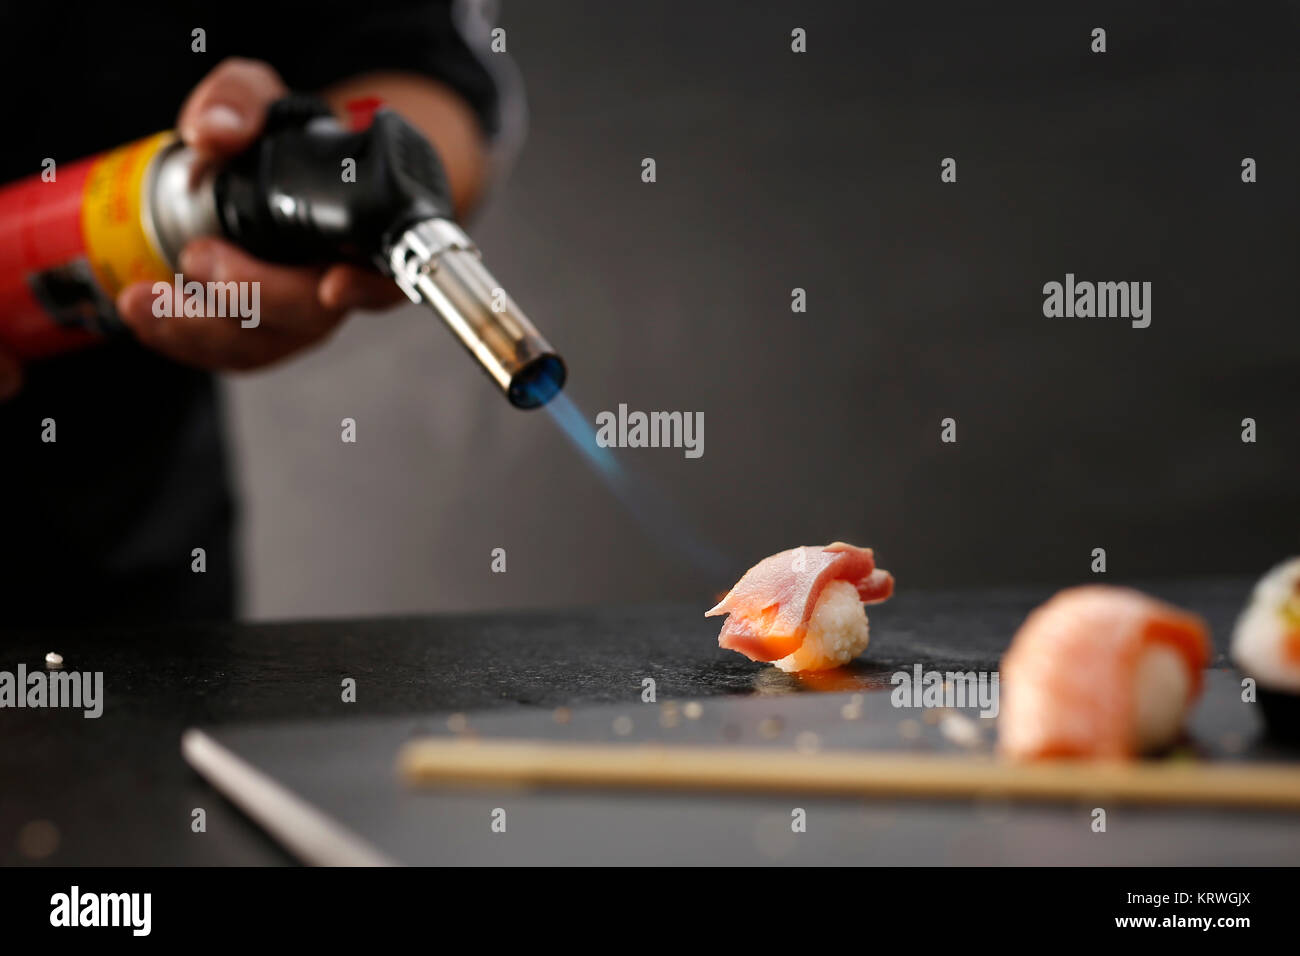 Sushi z surowym Å'ososiem opalane pÅ'omieniem. Porcja ryÅ¼u uformowanego w kulkÄ™ kawaÅ przykrytego'kiem ryby Foto Stock